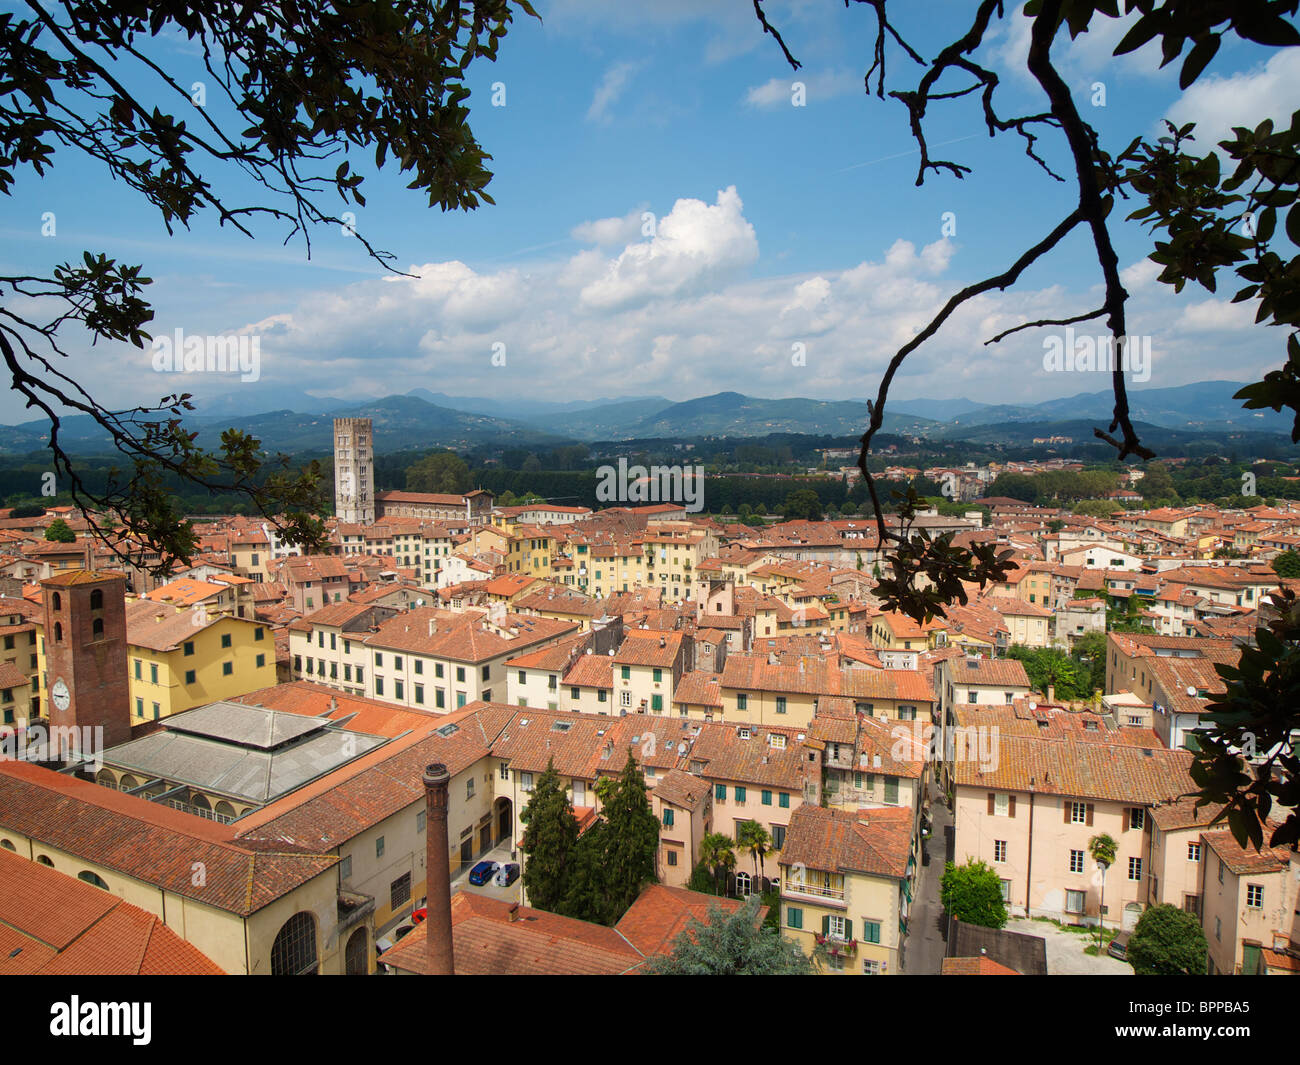 La storica città di Lucca visto dalla Torre Guinigi con la famosa Piazza amfiteatro nel centro. Toscana, Italia Foto Stock